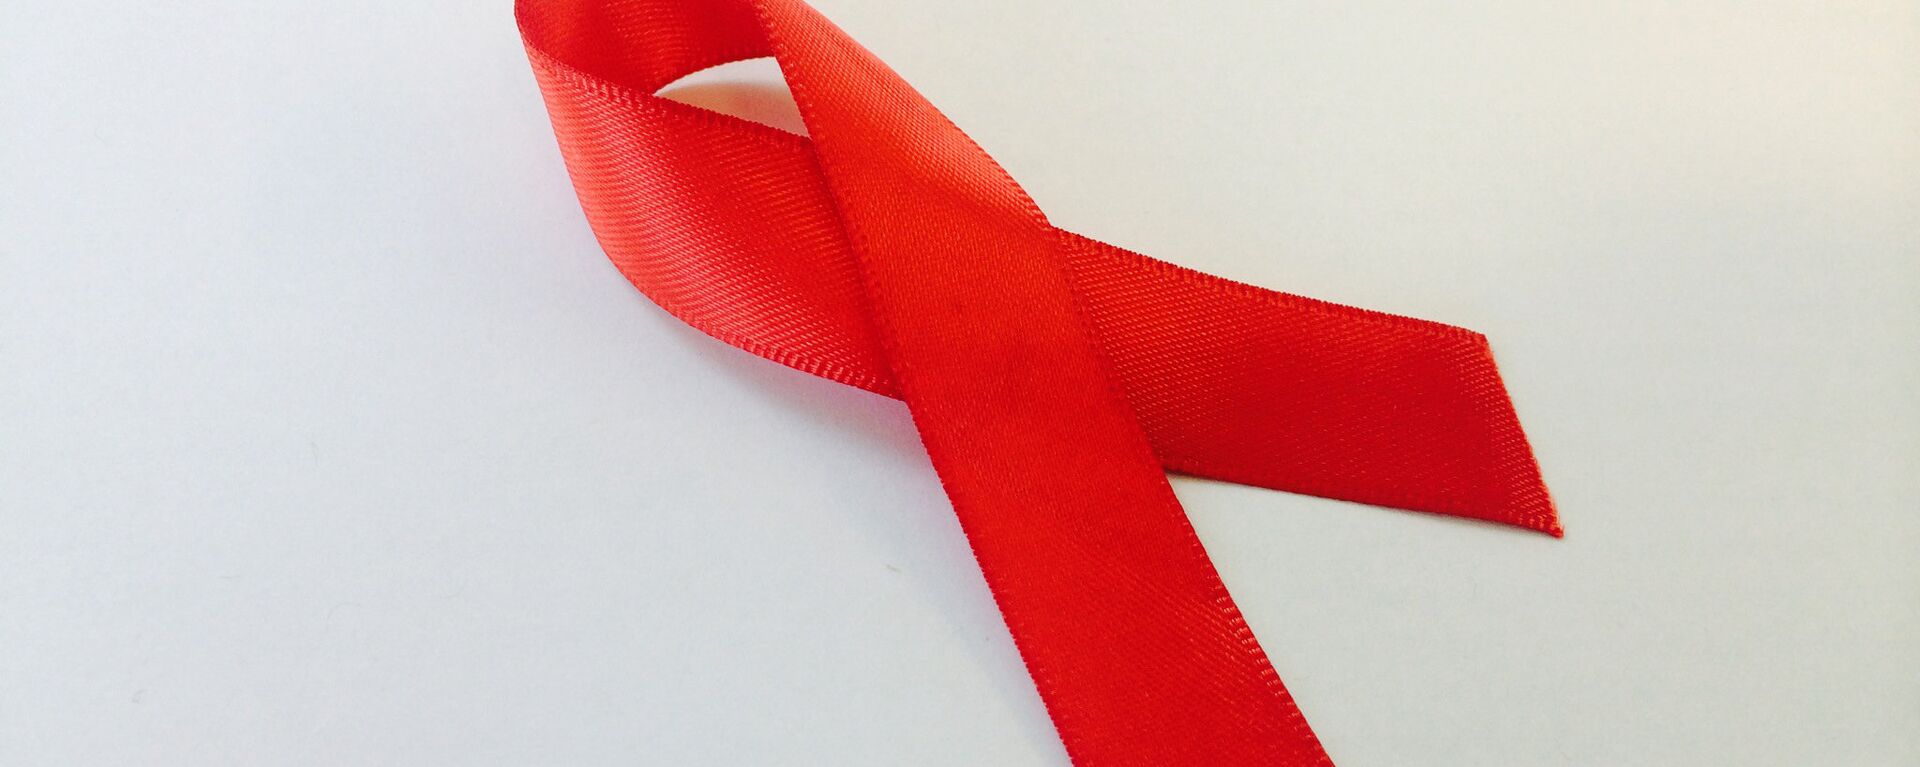 El lazo rojo, símbolo de la lucha contra el VIH y el sida - Sputnik Mundo, 1920, 01.12.2021